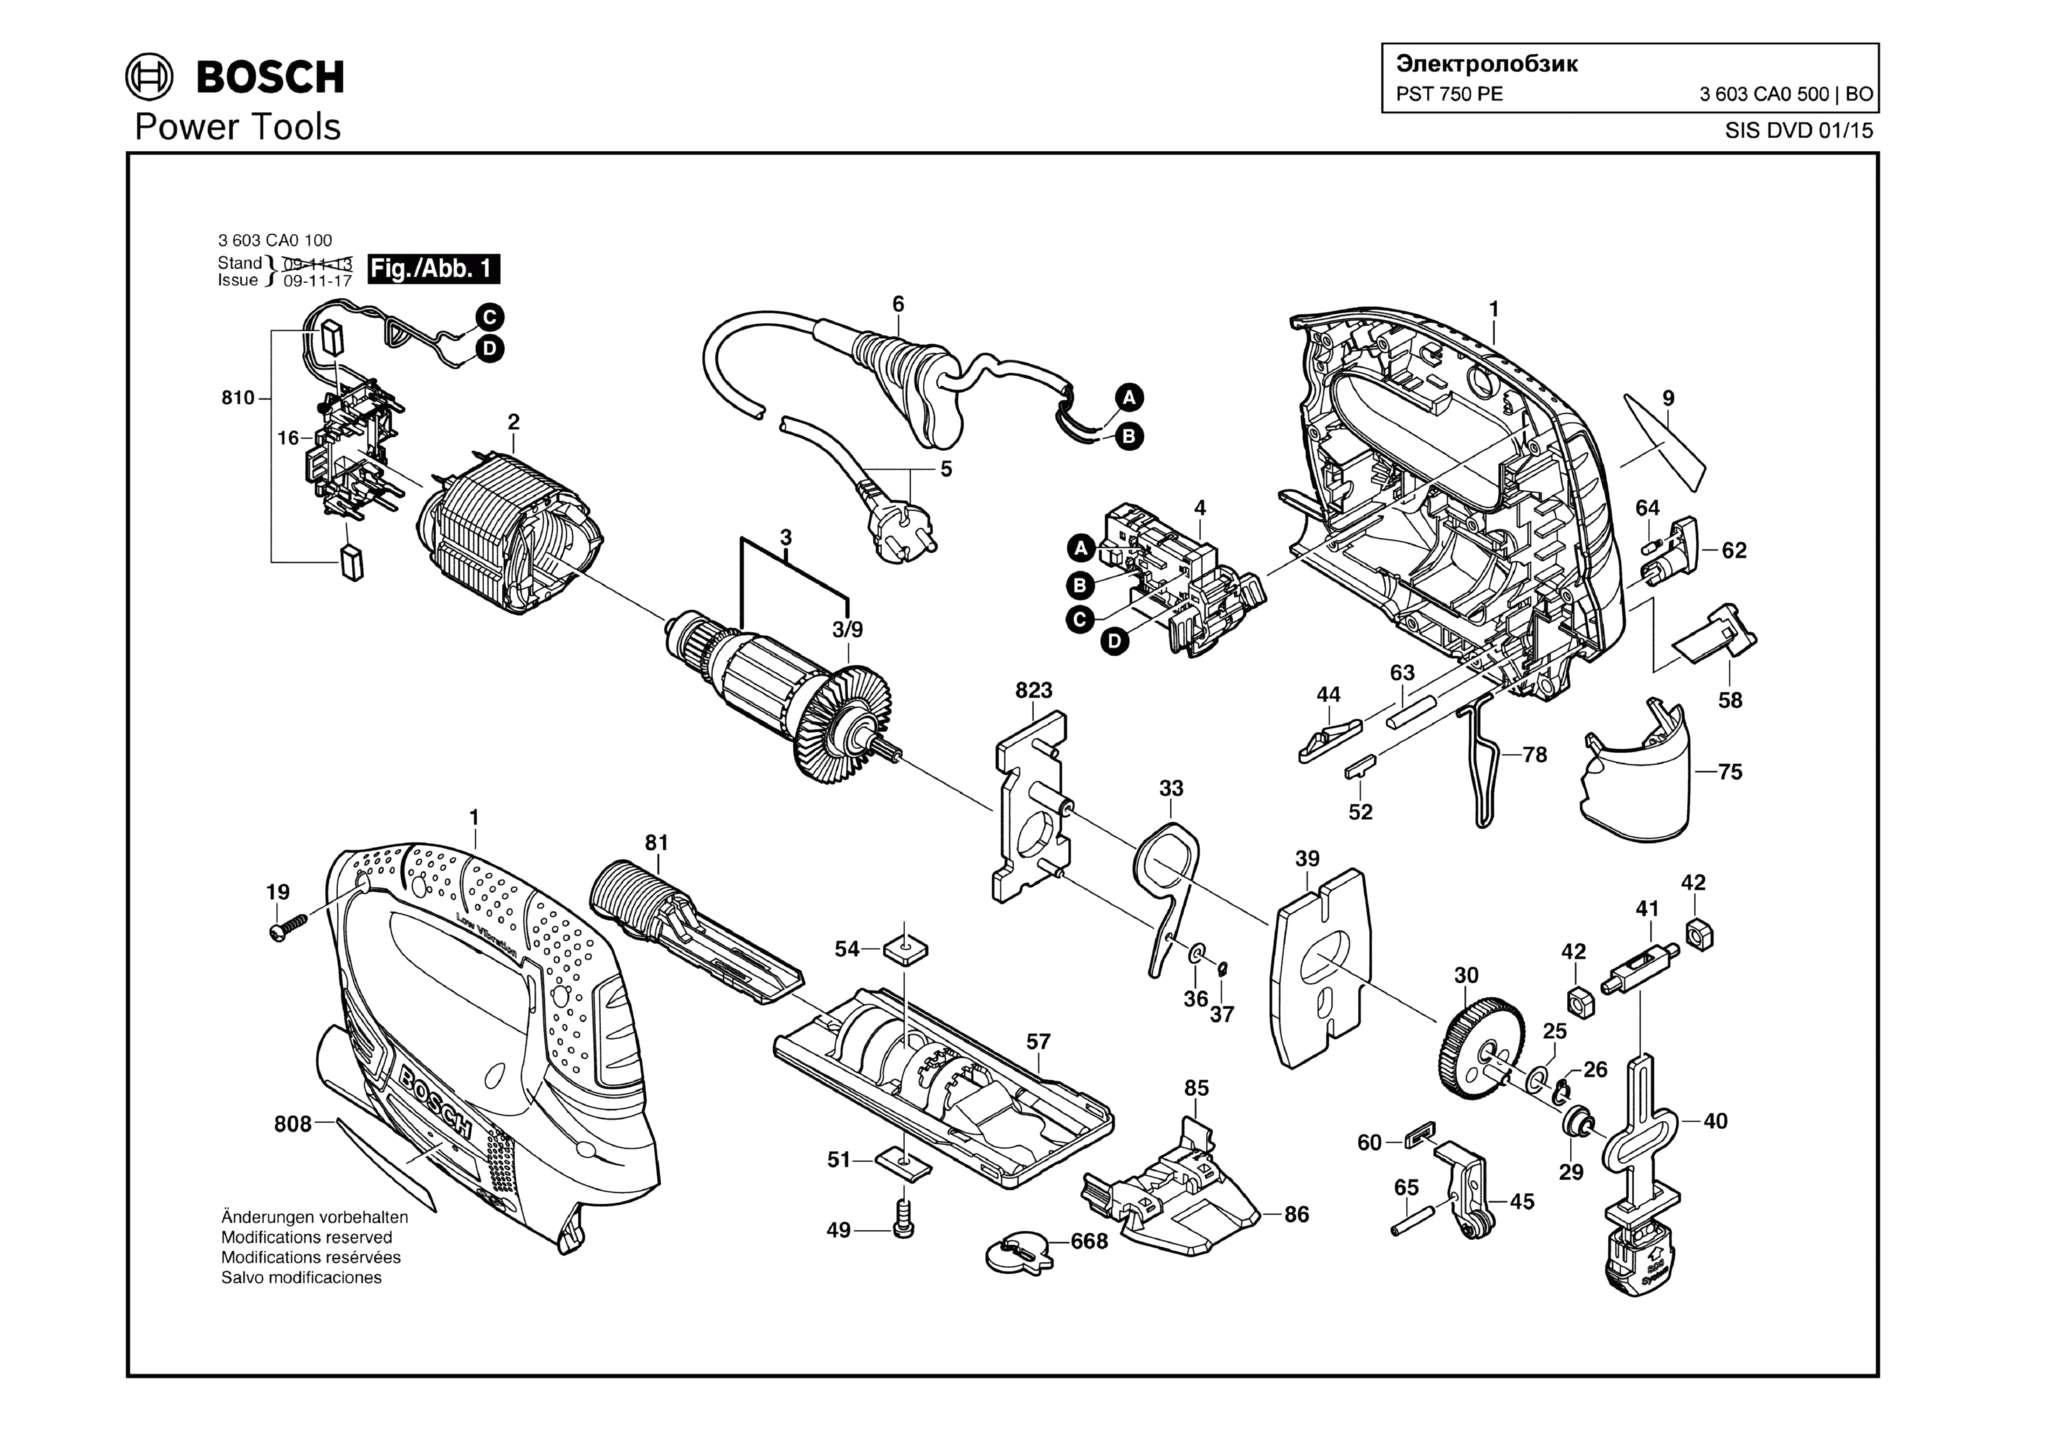 Запчасти, схема и деталировка Bosch PST 750 PE (ТИП 3603CA0500)